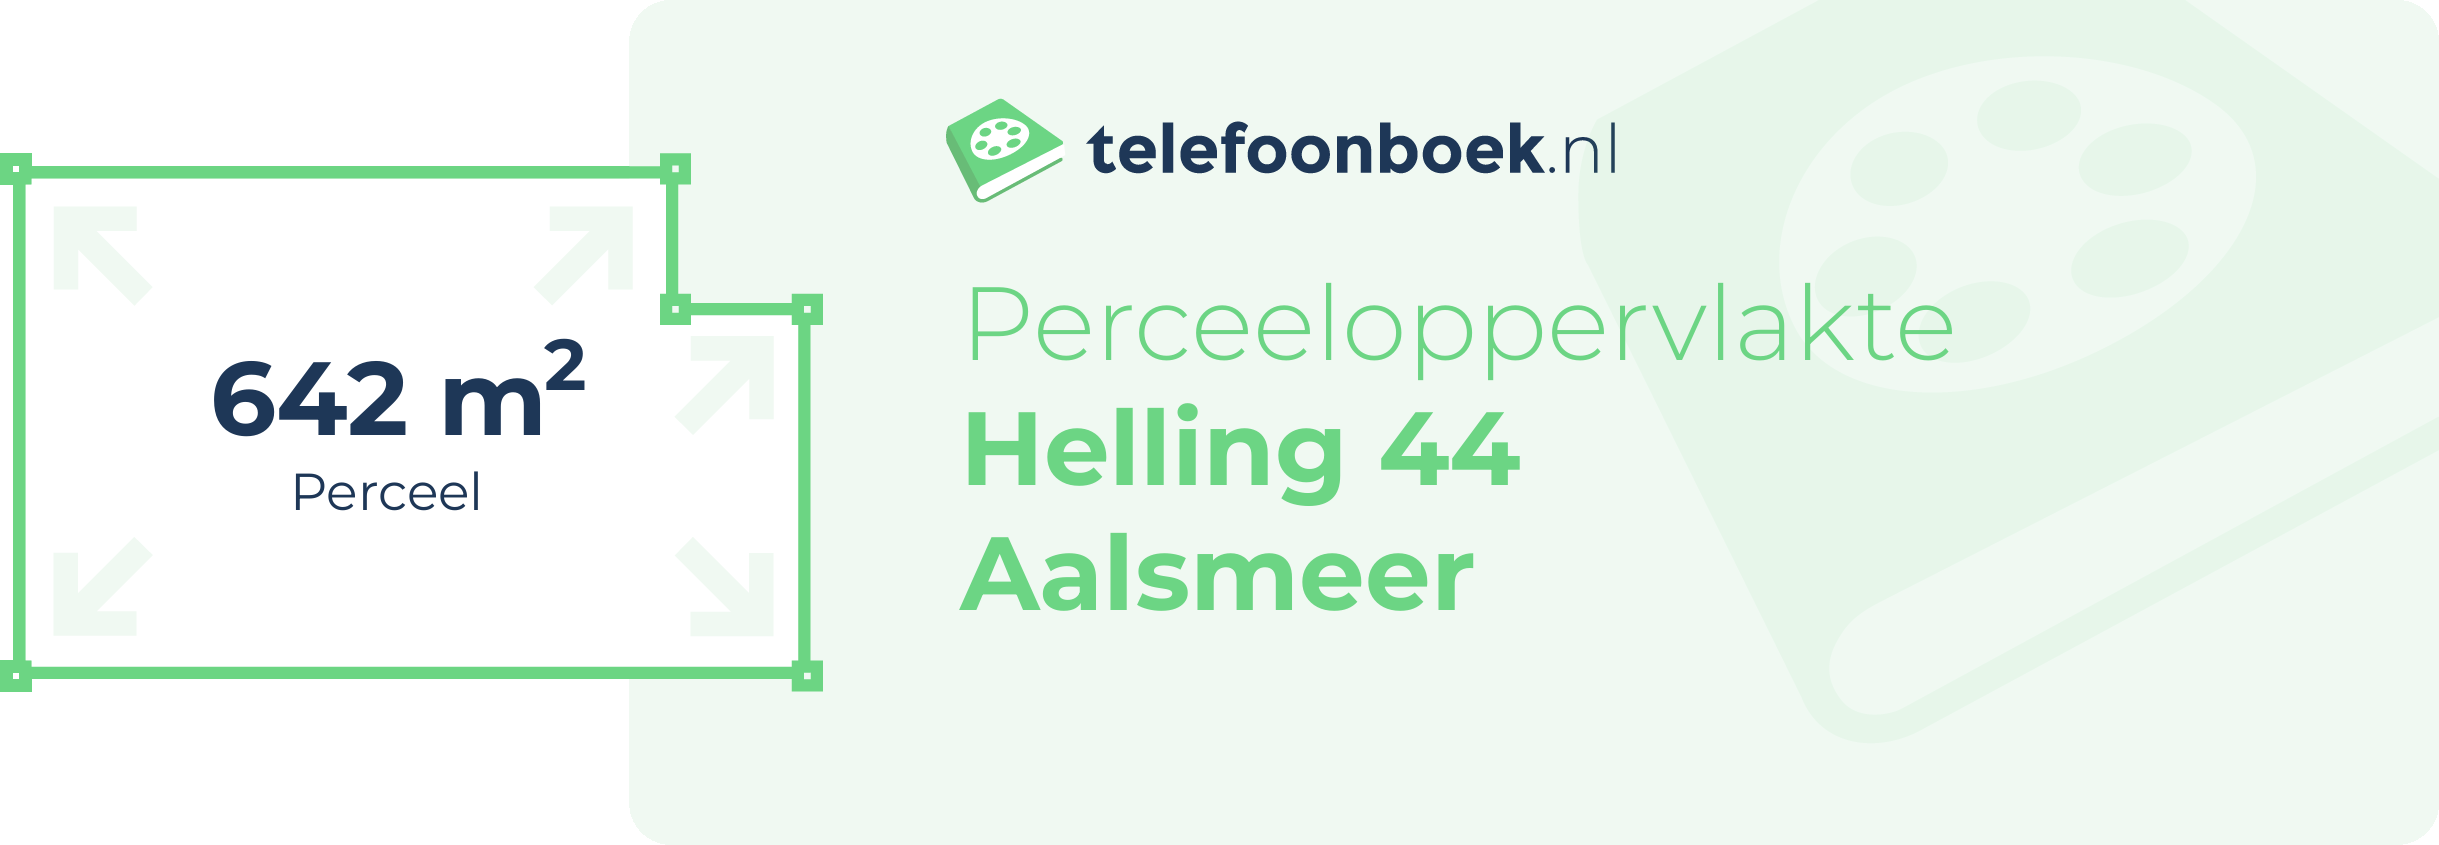 Perceeloppervlakte Helling 44 Aalsmeer